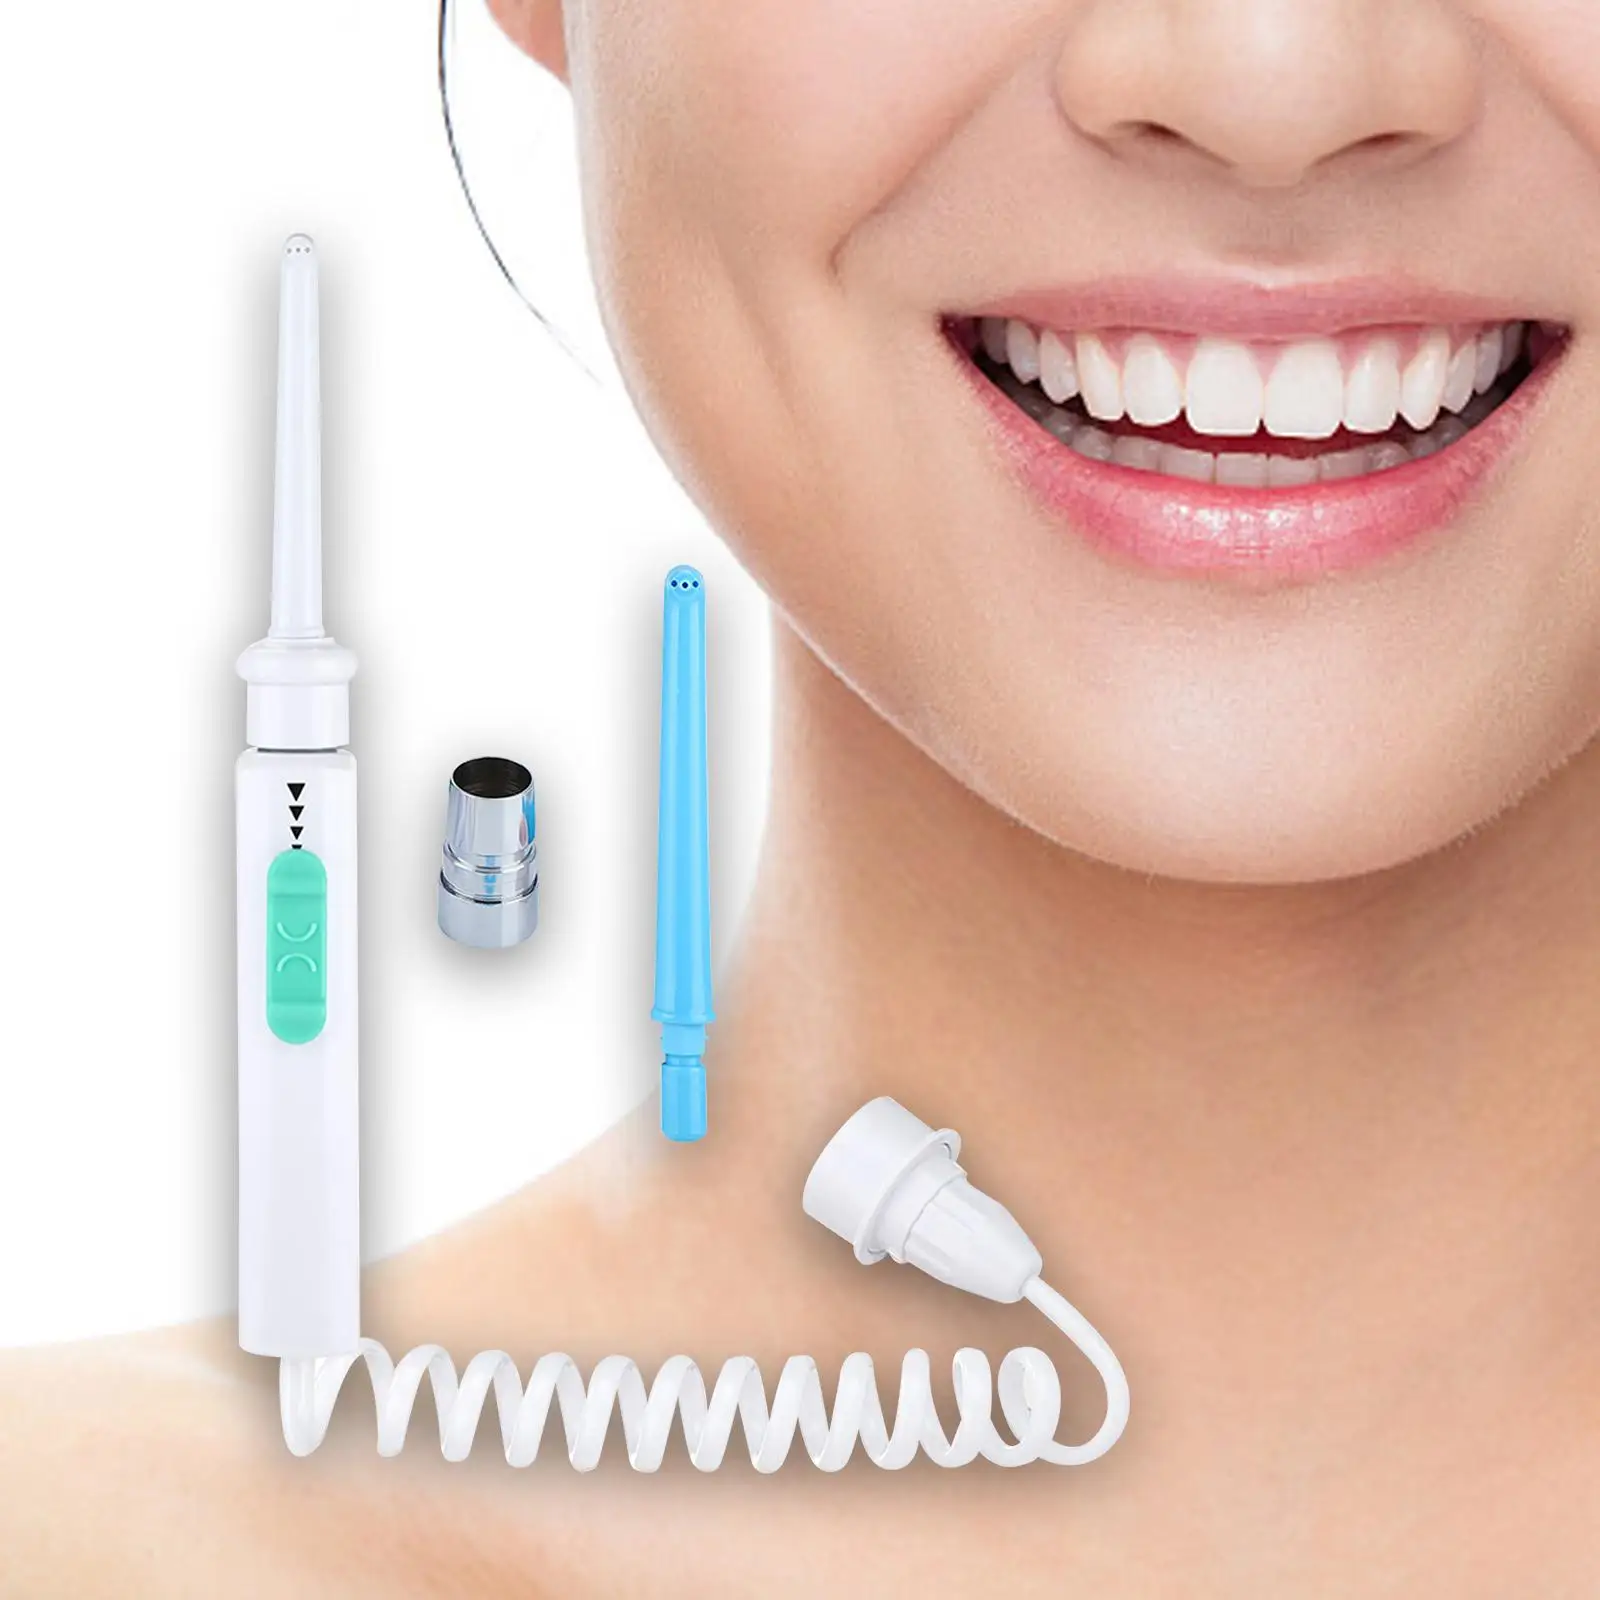 Water Flosser Adjustable Faucet Adults Tooth Cleaning Dentures Water Pressure oral Waterproof Travel Portable Teeth Cleaner